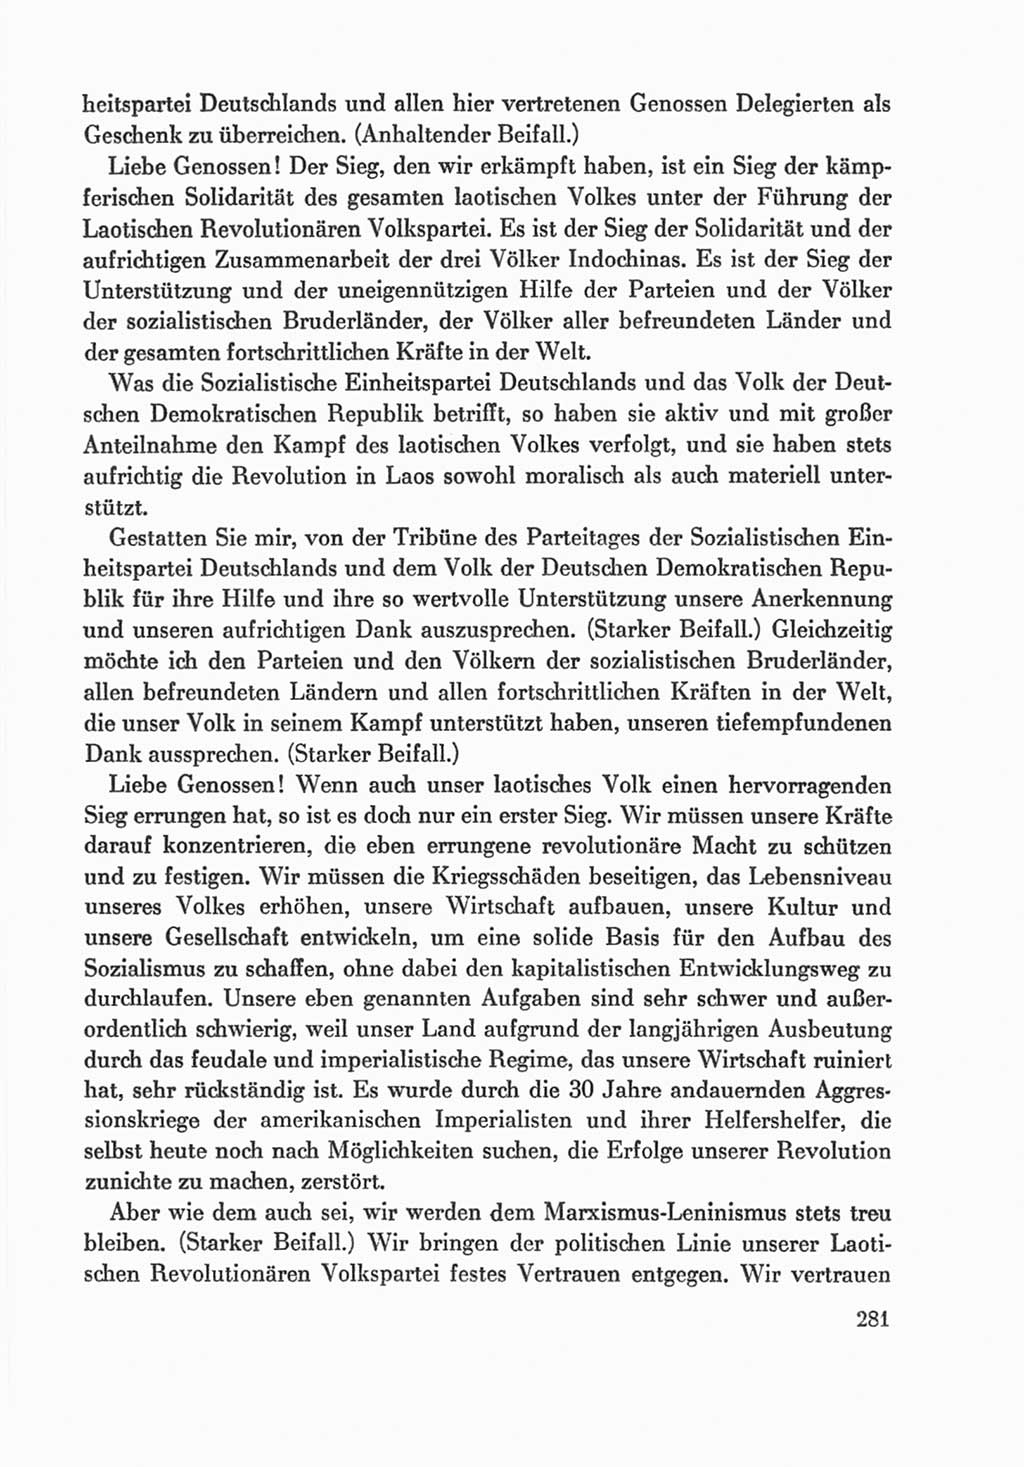 Protokoll der Verhandlungen des Ⅸ. Parteitages der Sozialistischen Einheitspartei Deutschlands (SED) [Deutsche Demokratische Republik (DDR)] 1976, Band 1, Seite 281 (Prot. Verh. Ⅸ. PT SED DDR 1976, Bd. 1, S. 281)